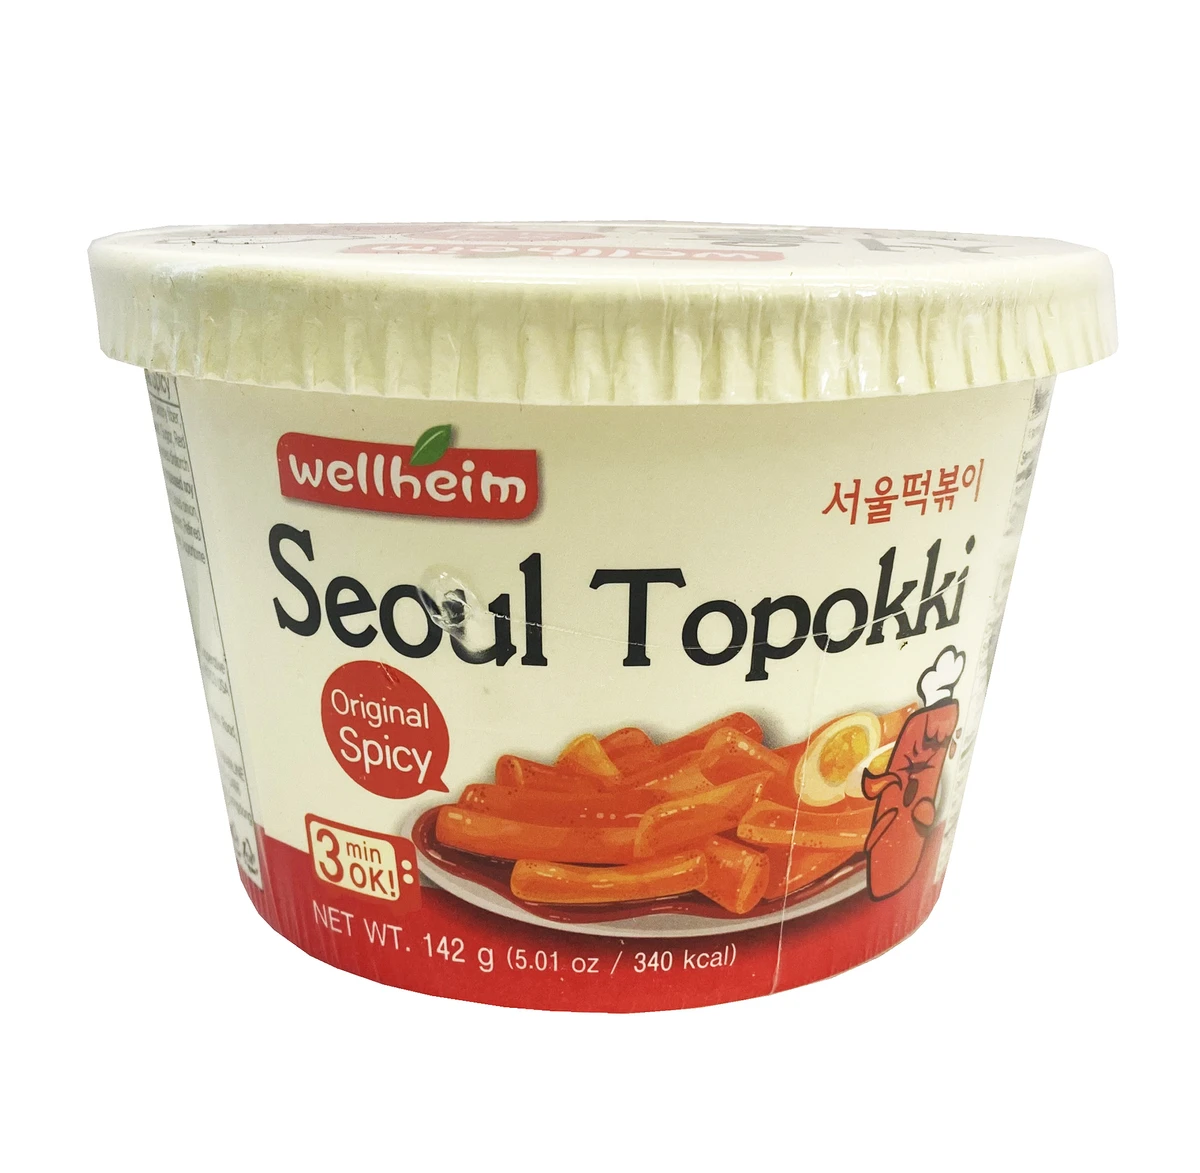 Wellheim Seoul topokki spicy flavor